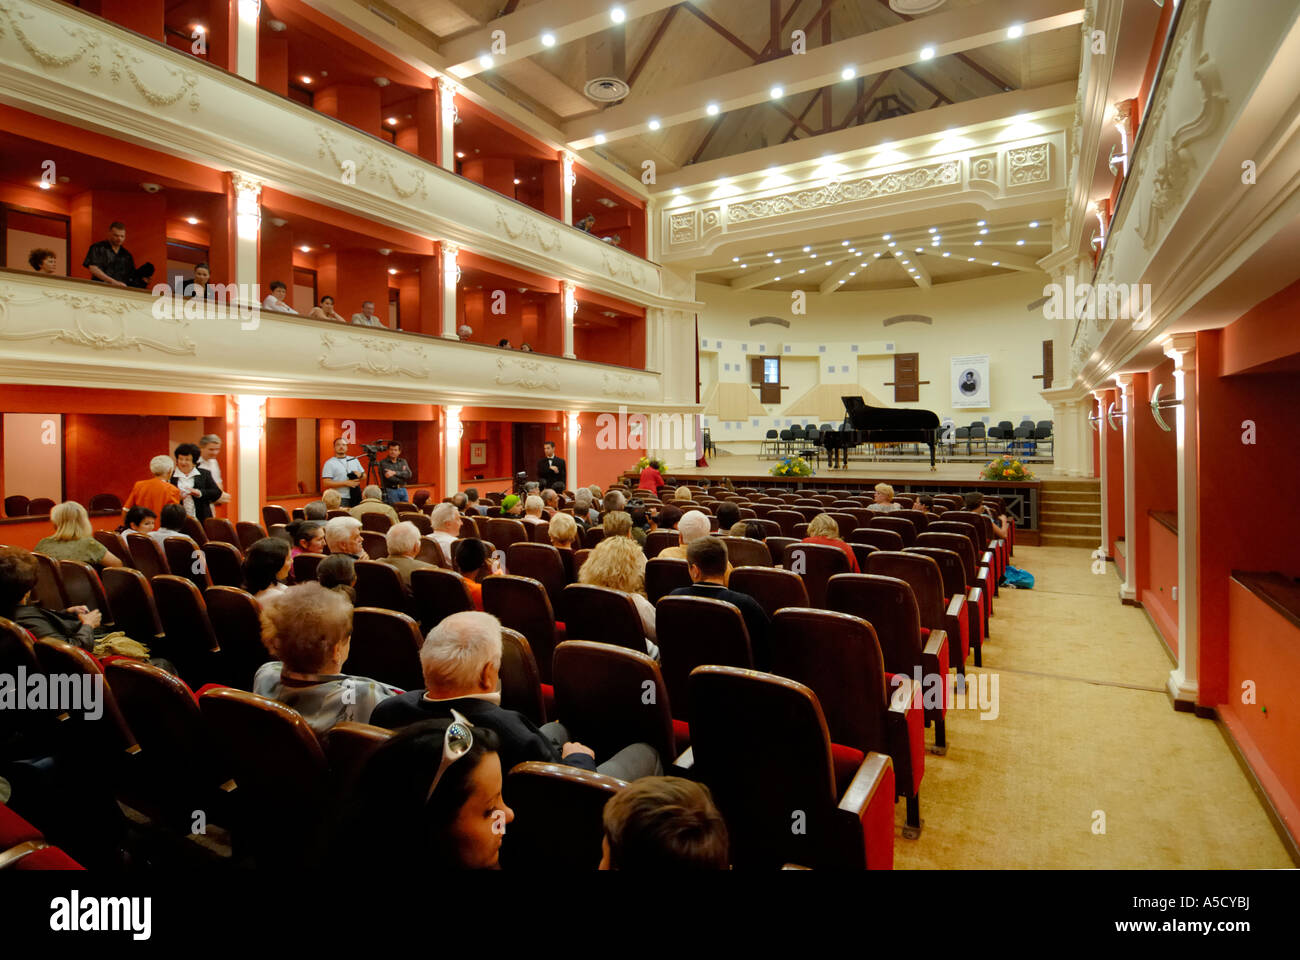 Roumanie Sibiu. Capitale européenne de la Culture 2007. Sala Thalia théâtre salle de concert. Banque D'Images